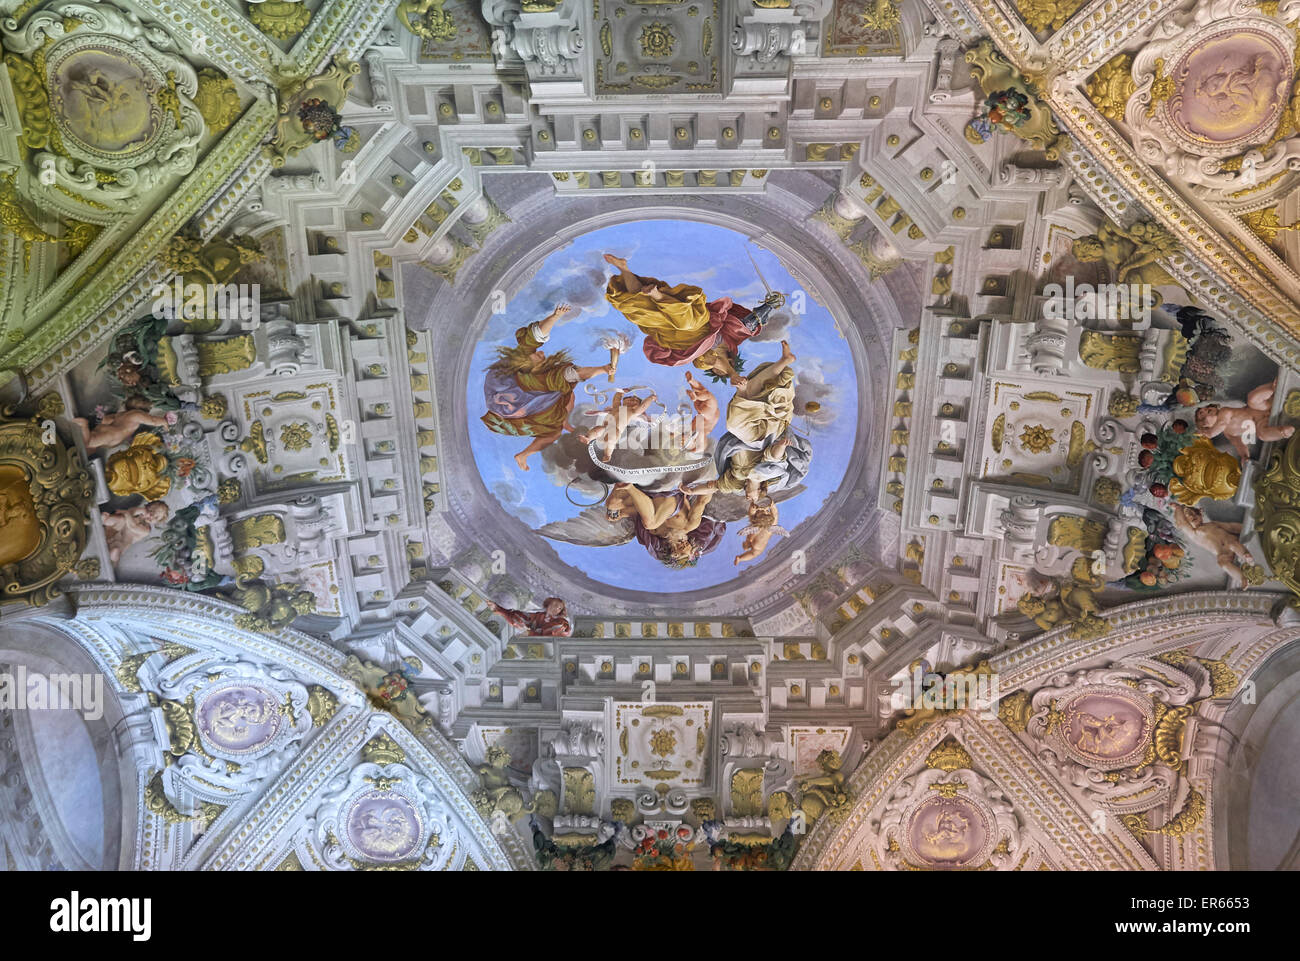 Pitti Palace, Florentine Grandeur, Stock Photo